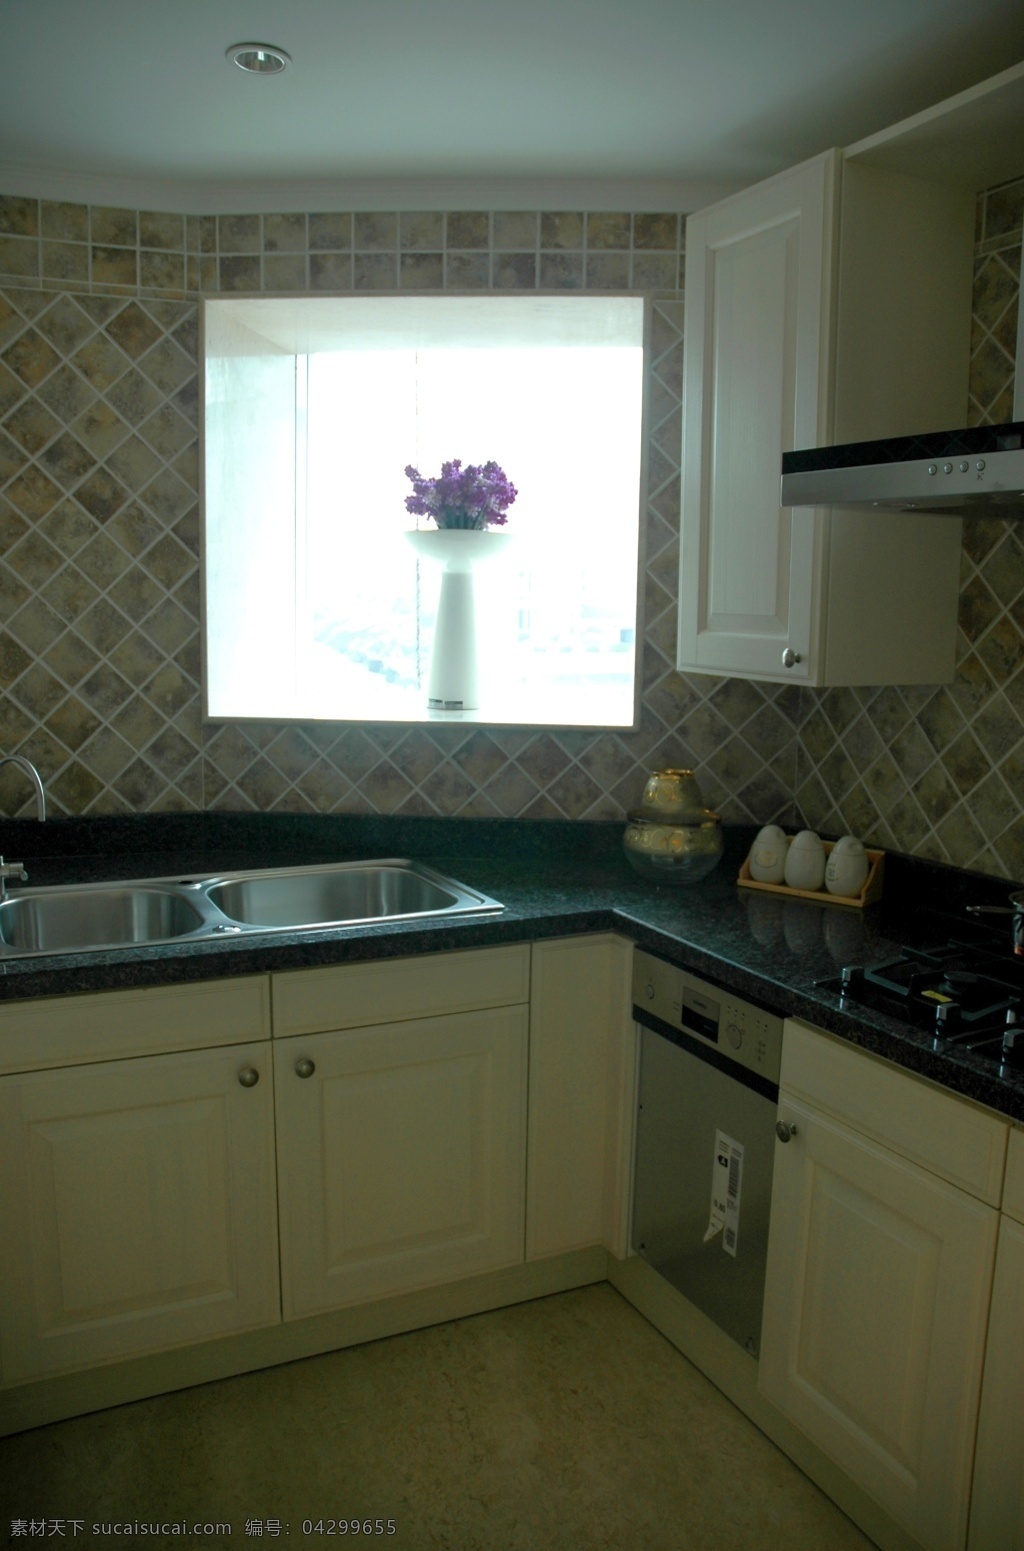 别墅 室内 厨房 装修 效果图 白色 木质 整体橱柜 黑色 大理石 台面 陶瓷地板 吊顶